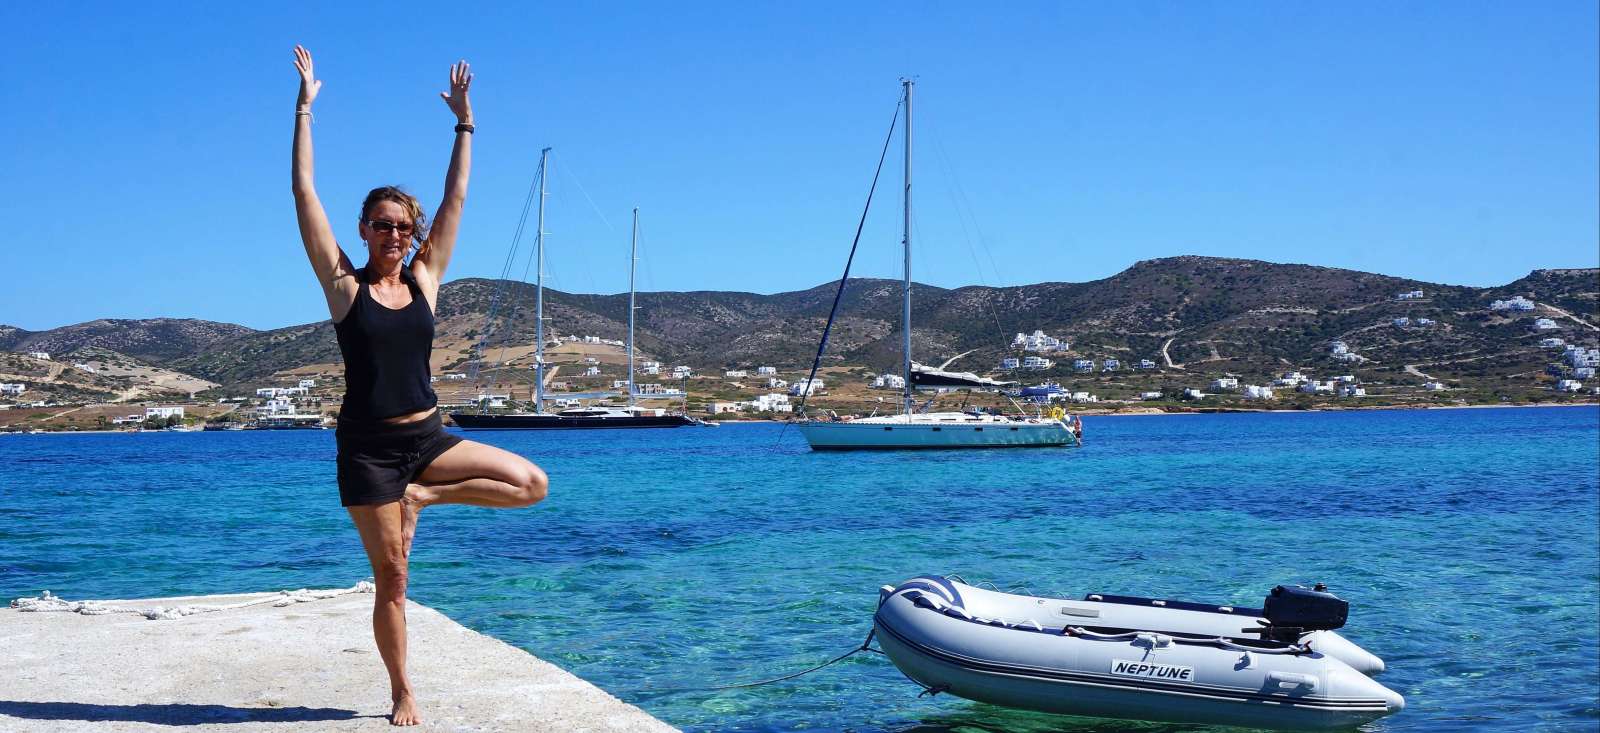 Voyage bien-être et yoga - Yoga et voile active dans les Cyclades